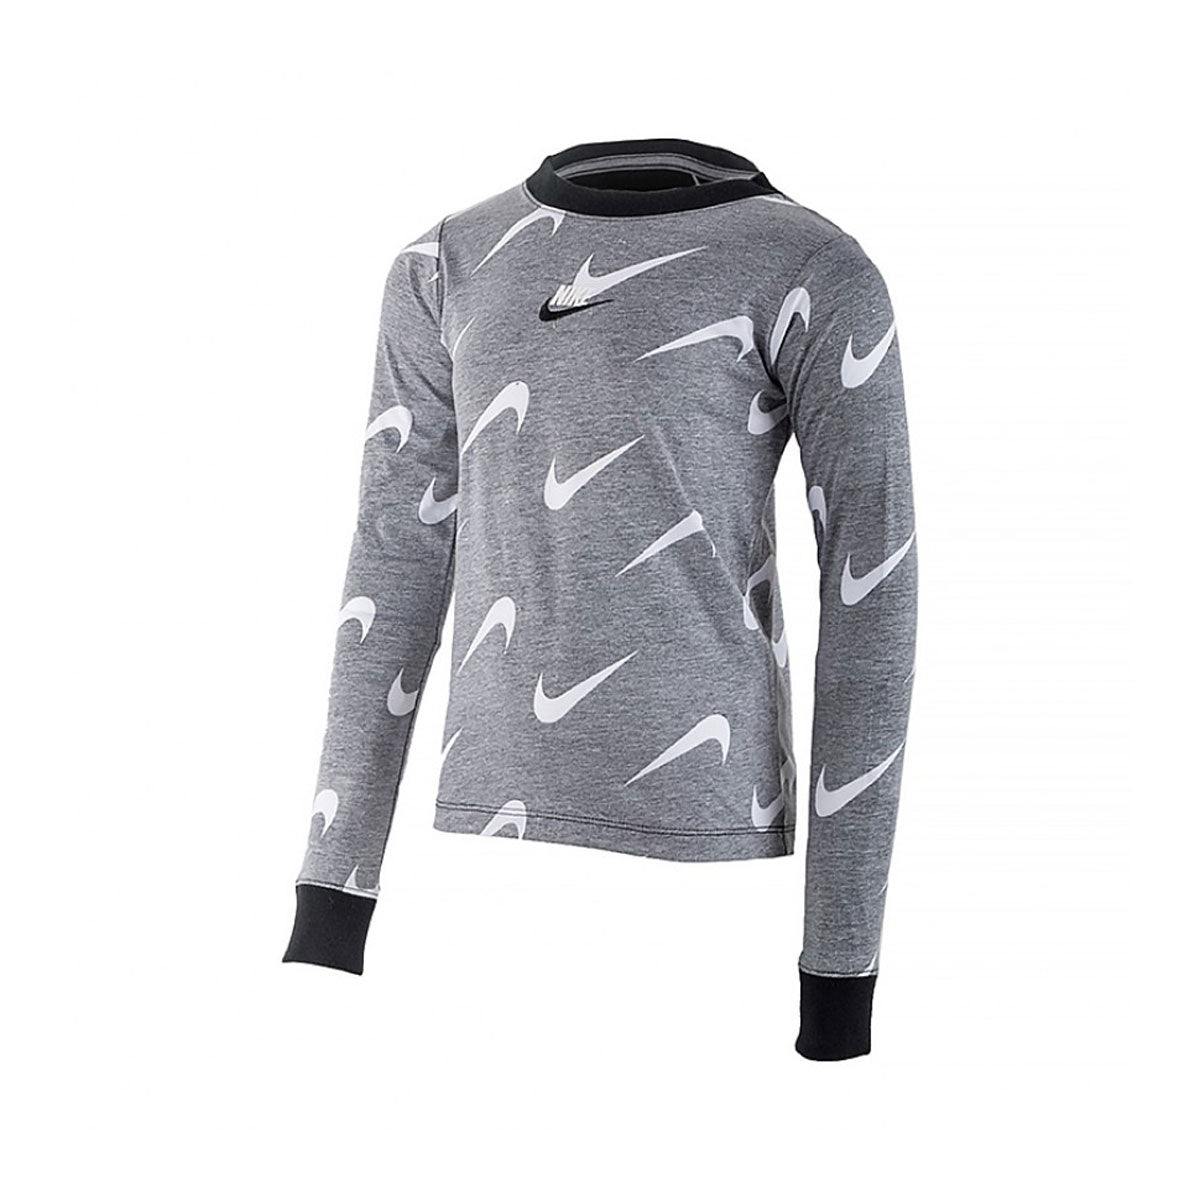 Nike Girls Sportswear Long Sleeve